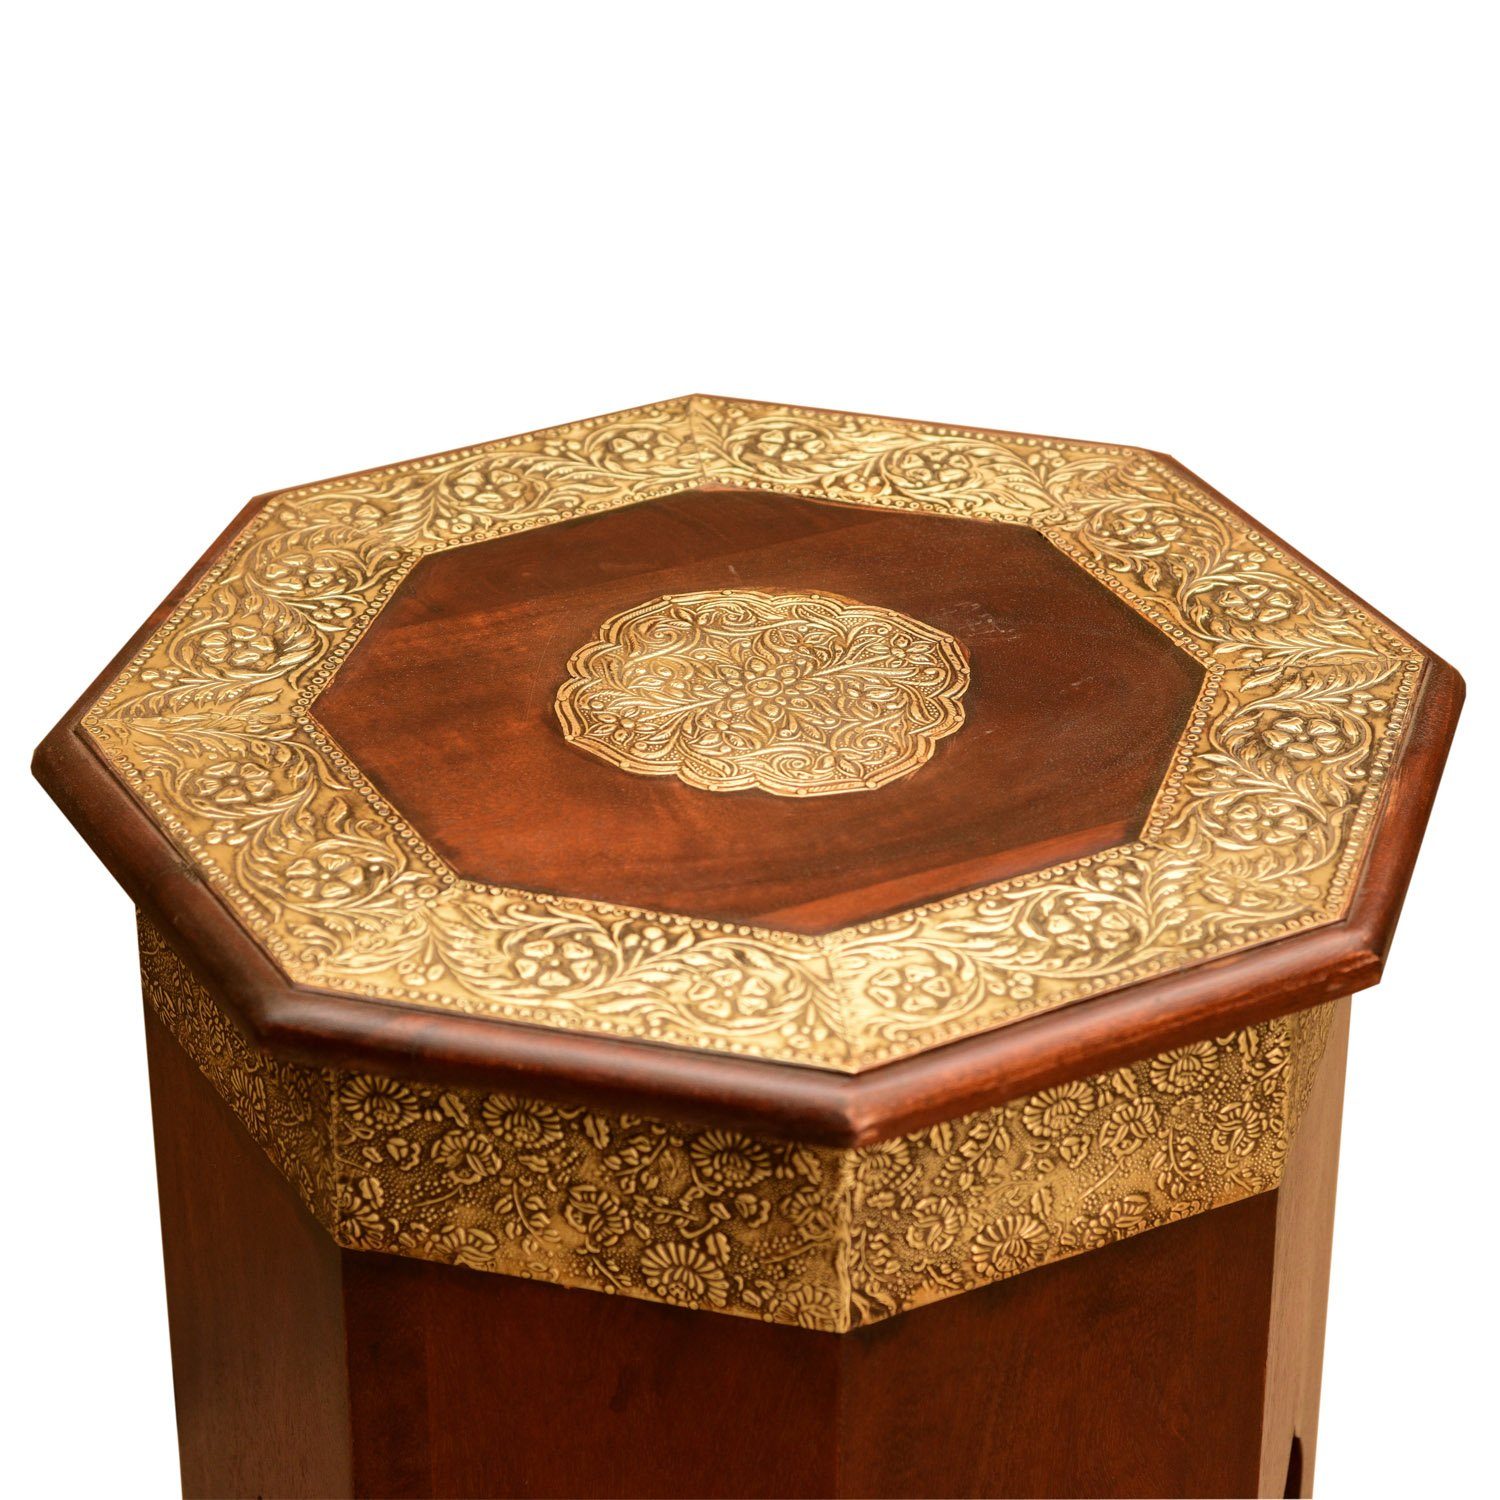 rot-braun Moro Orientalischer Gold Stil Messing, Beistelltisch Vintage Meena Casa cm marokkanischer Holz Ø Look in 40 Beistelltisch